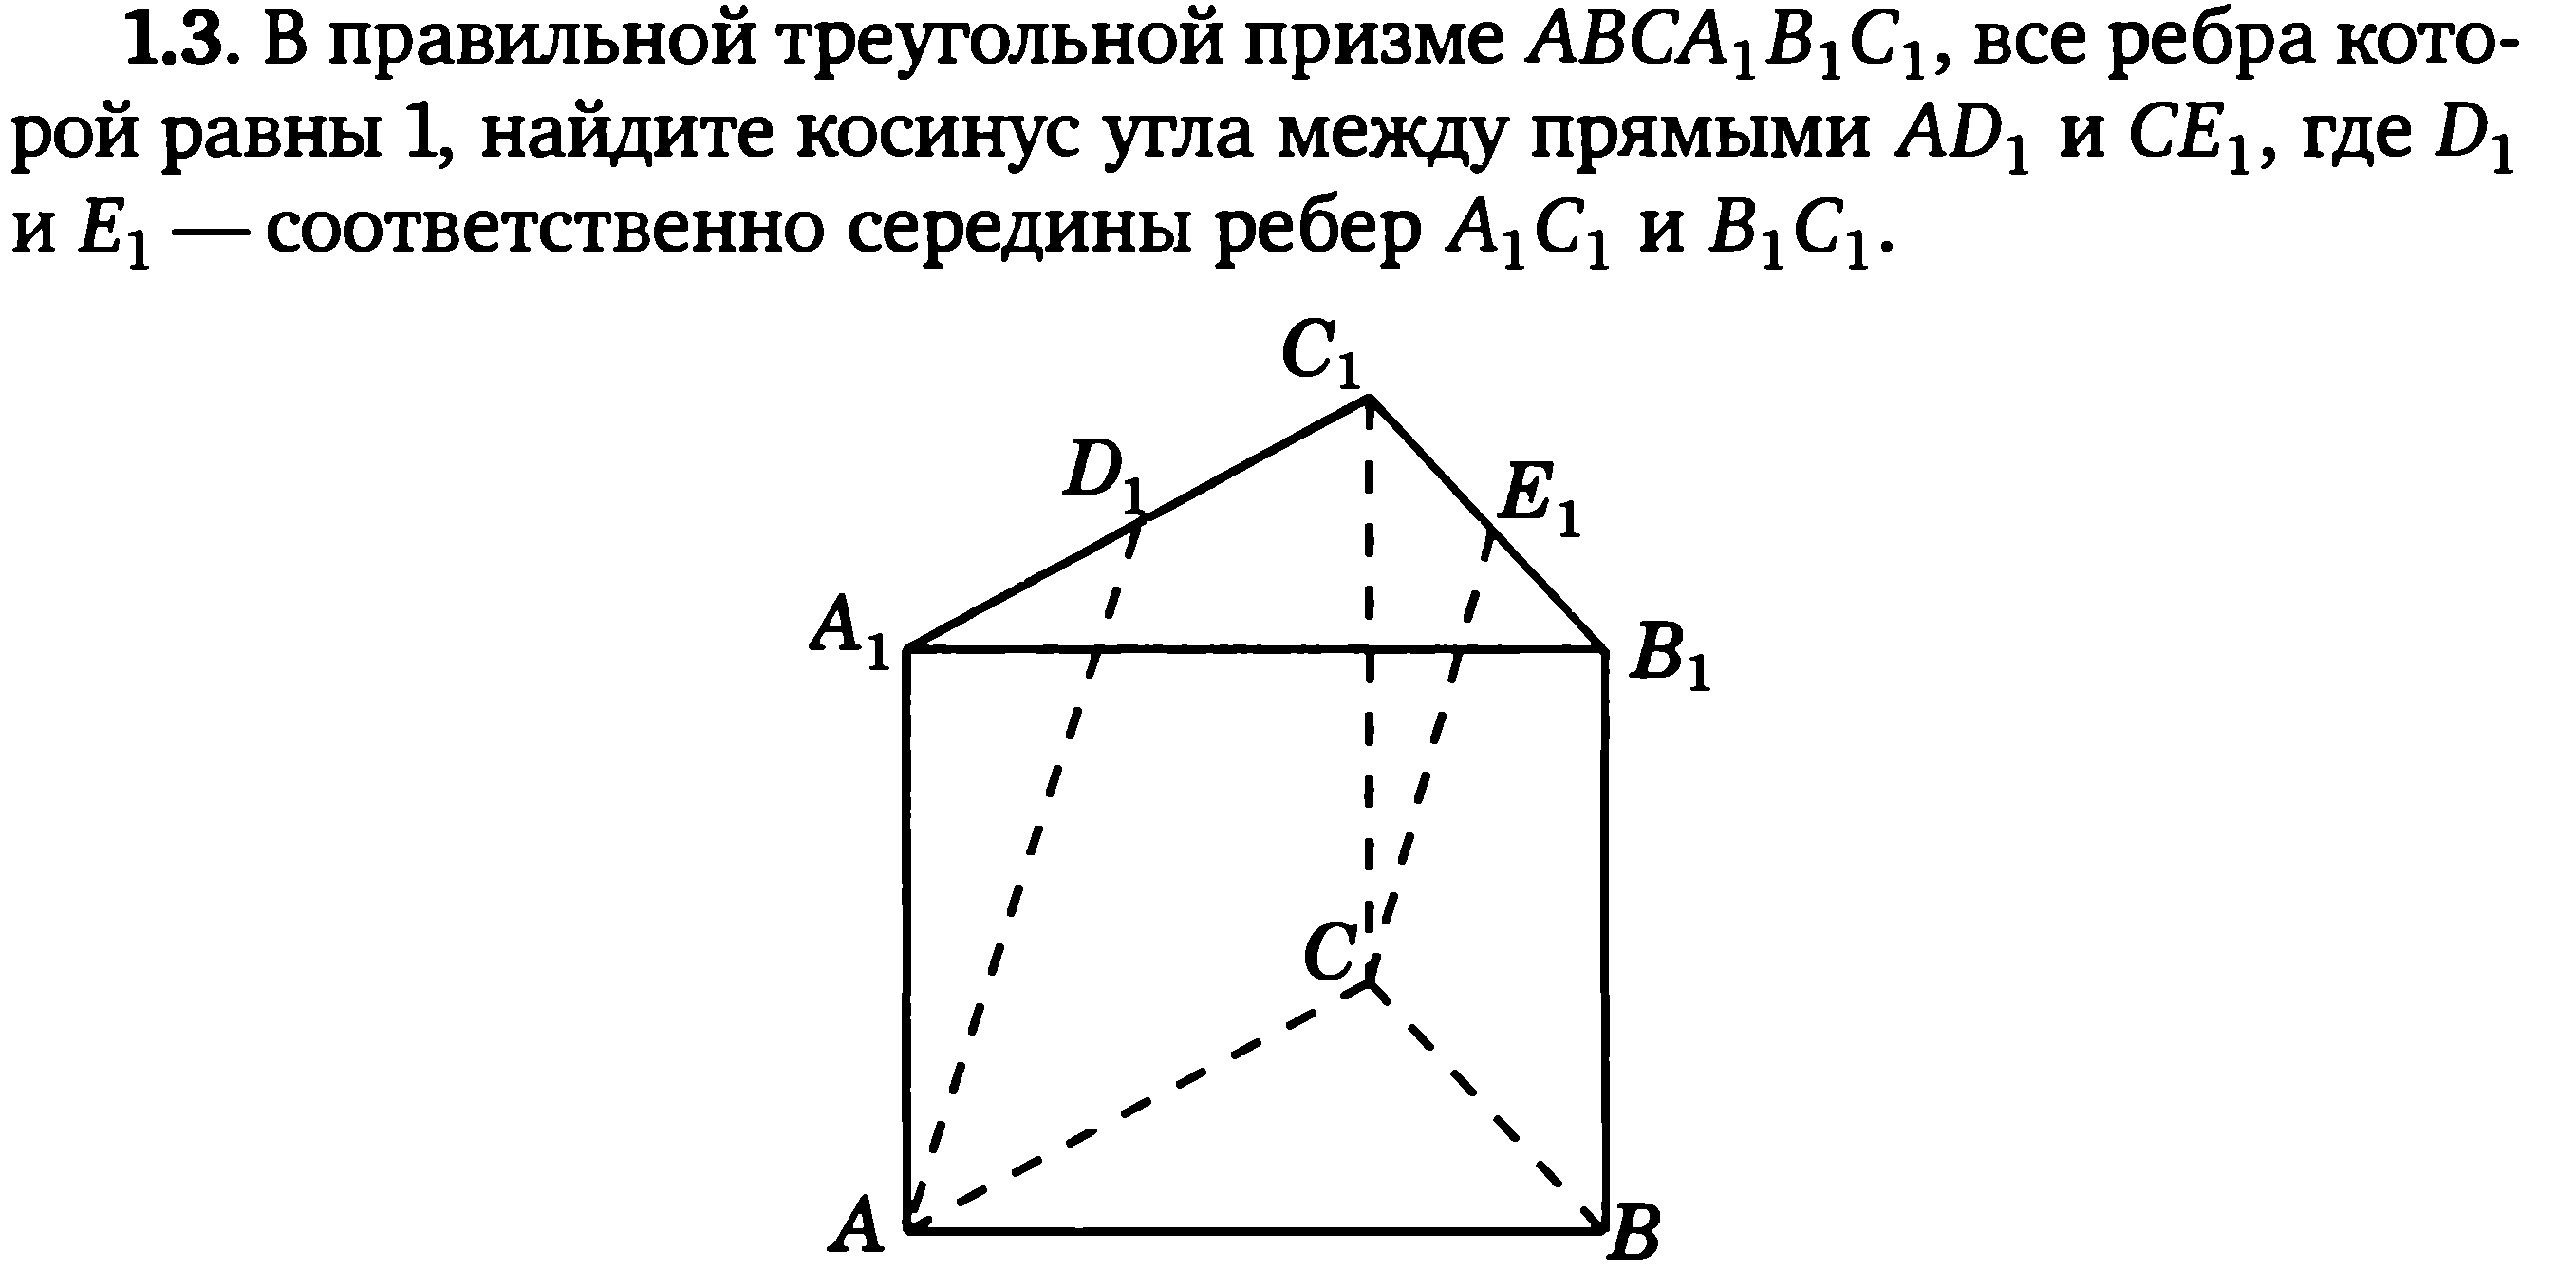 Правильная треугольная Призма